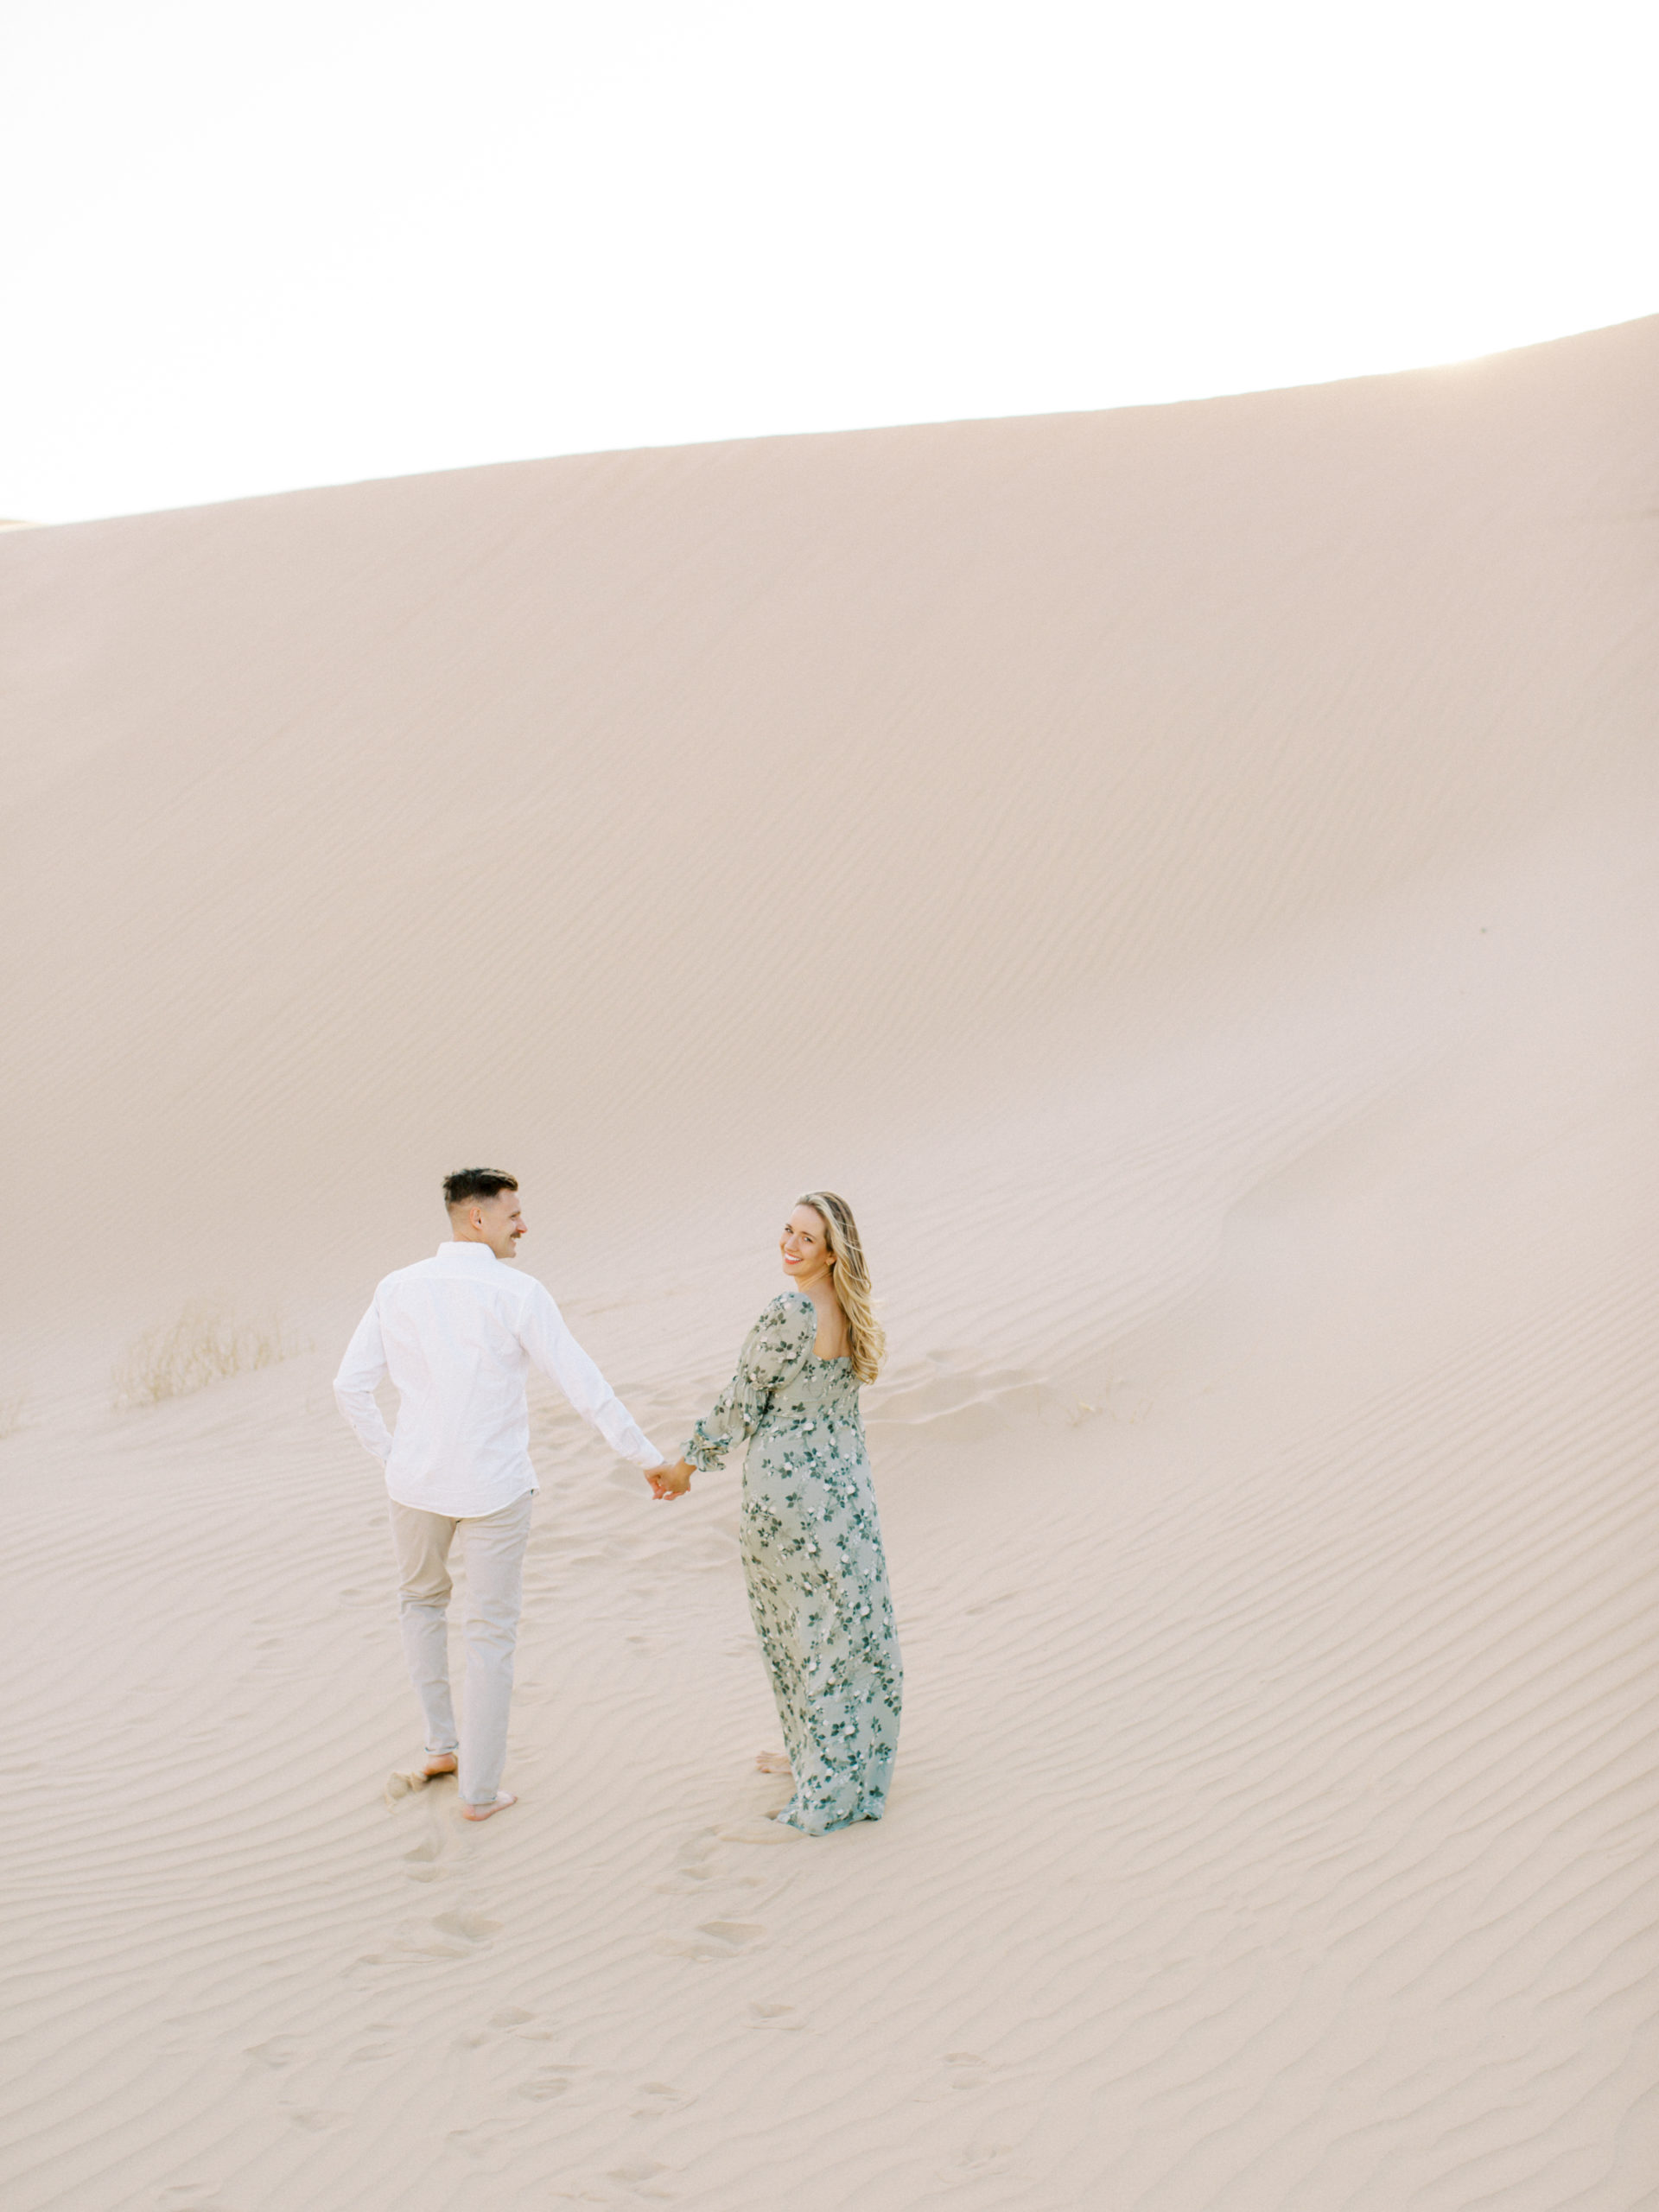 imperial-dunes-yuma-engagement-couple